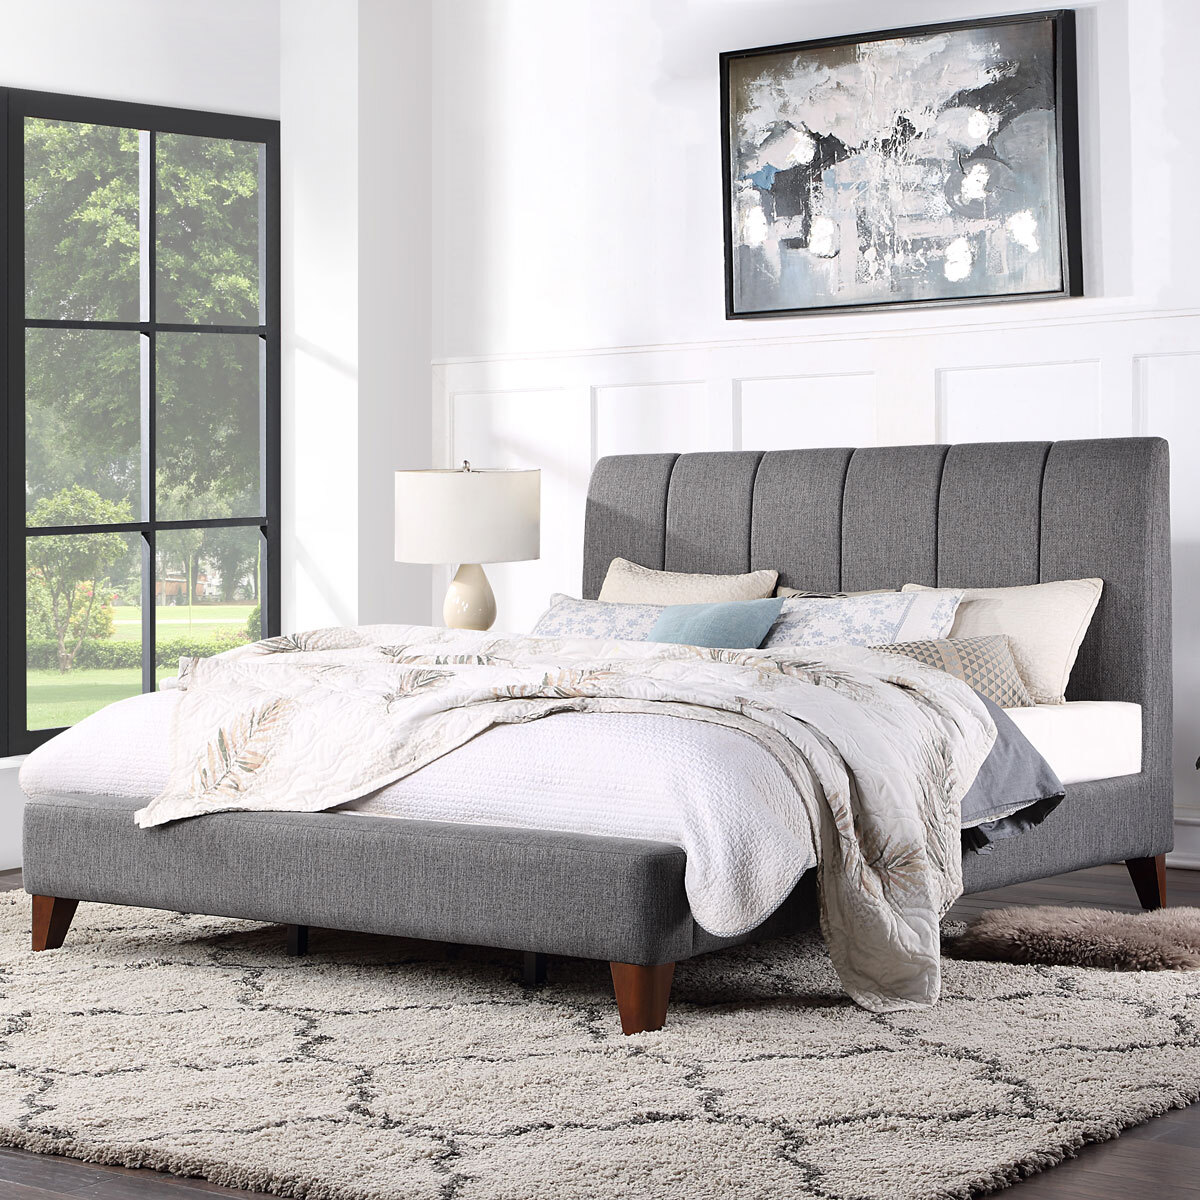 Northridge Home Grey Upholstered Bed, King Size Upholstered Bed Frame